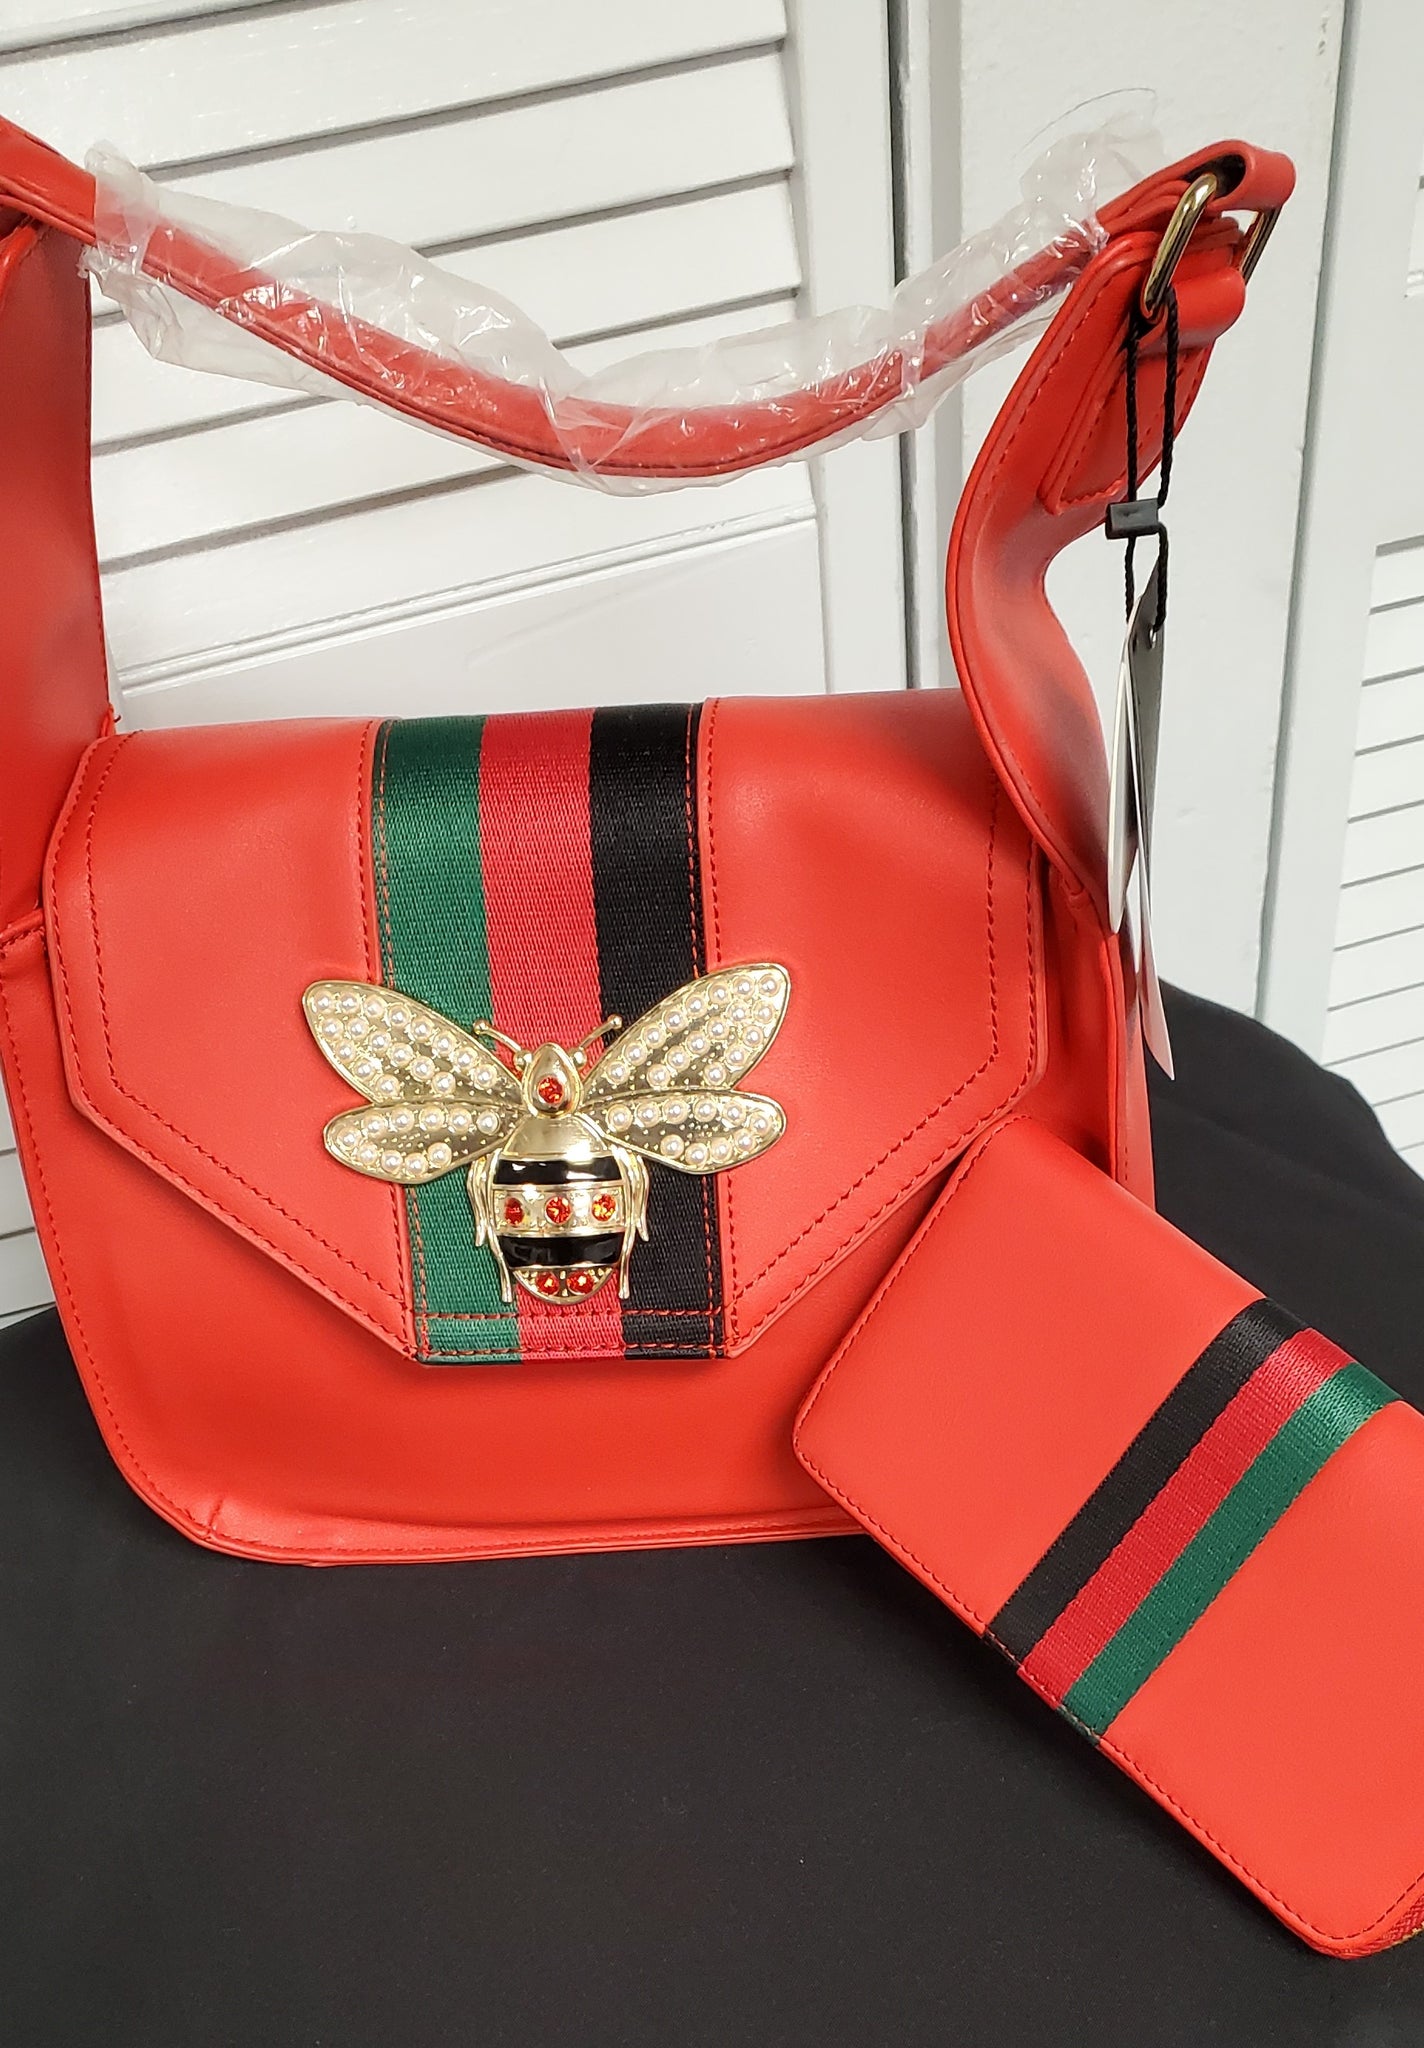 Meet Huntsville's most exclusive bag lady - Queen Bee of Beverly Hills -  256 Today